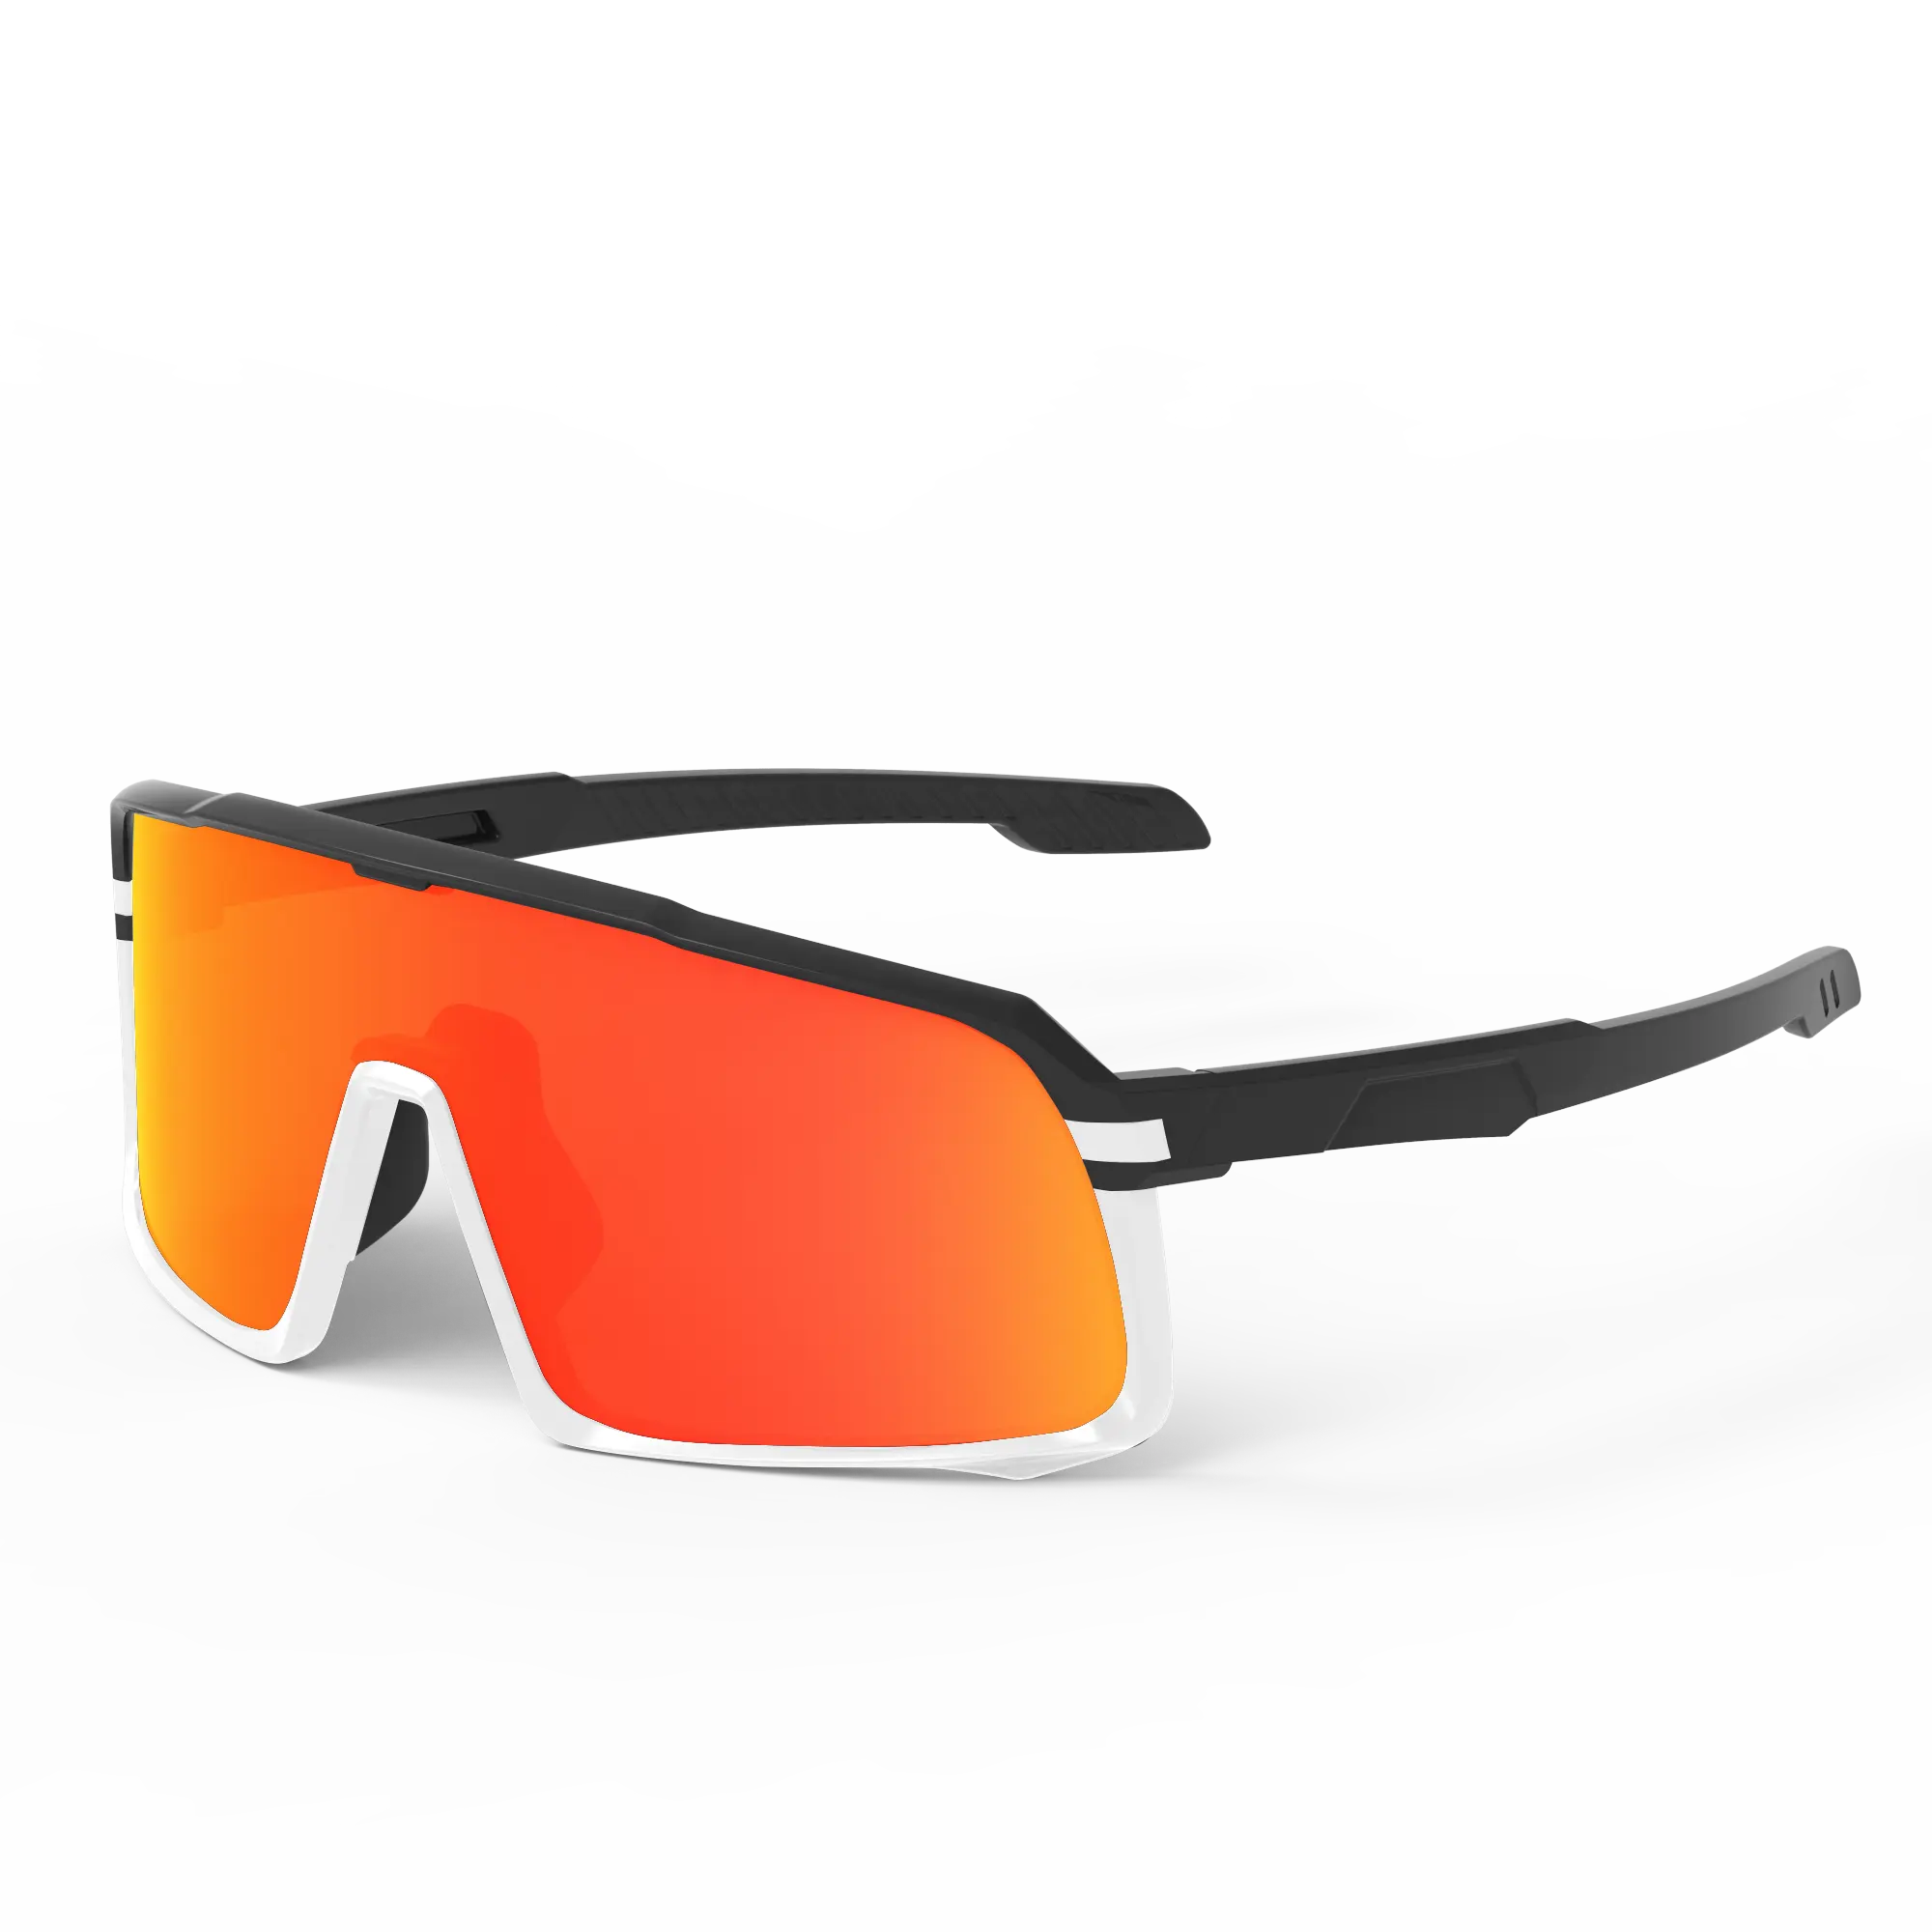 SUNOK kacamata hitam olahraga terpolarisasi, kacamata hitam anti UV lensa yang dapat dipertukarkan untuk sepeda MTB, kacamata bersepeda kustom